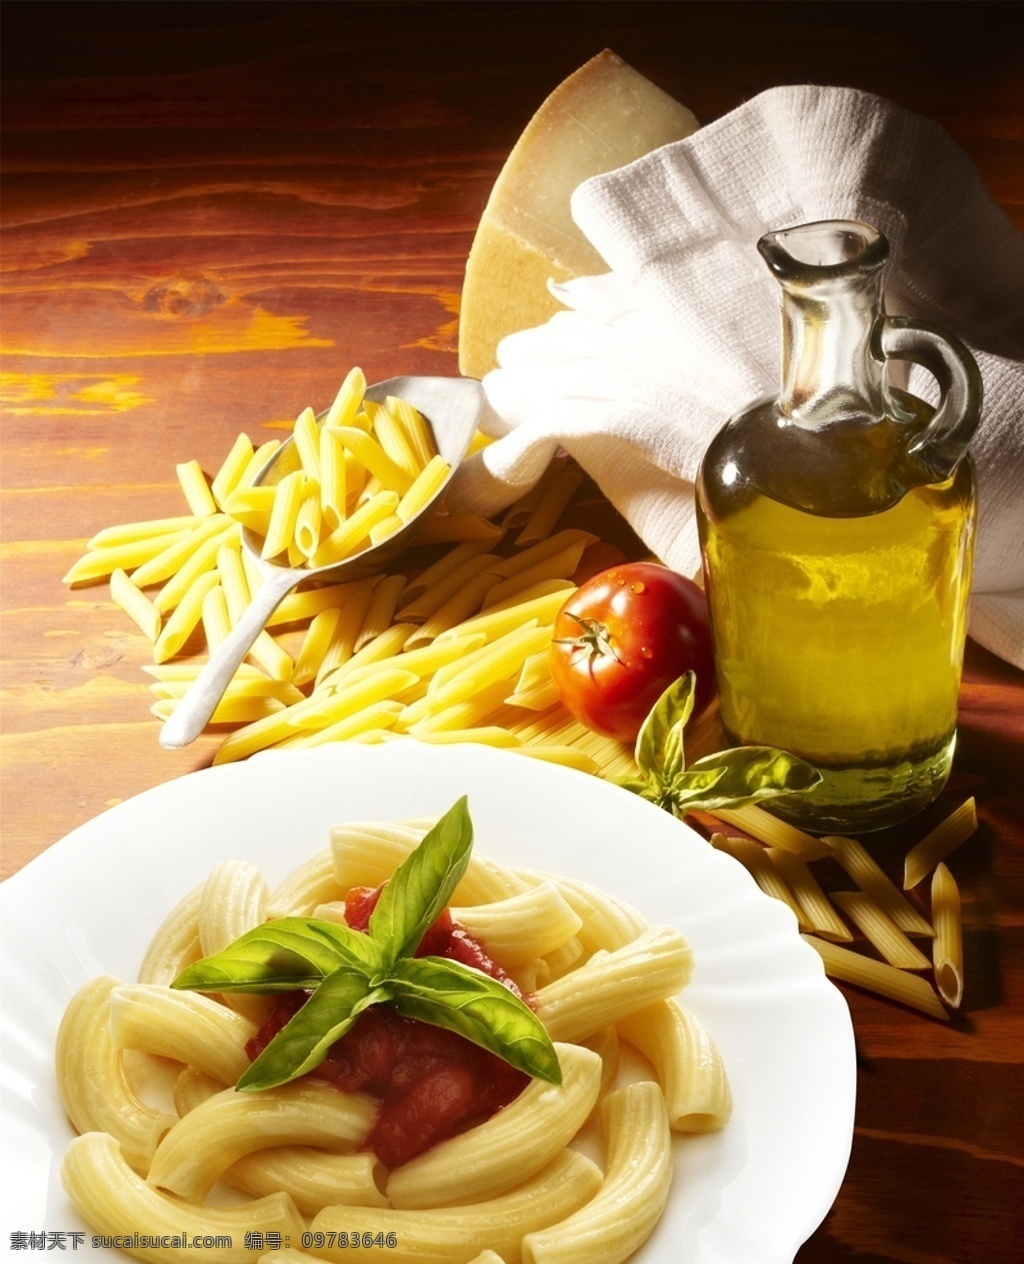 意大利面图片 意大利面 美食 传统美食 餐饮美食 高清菜谱用图